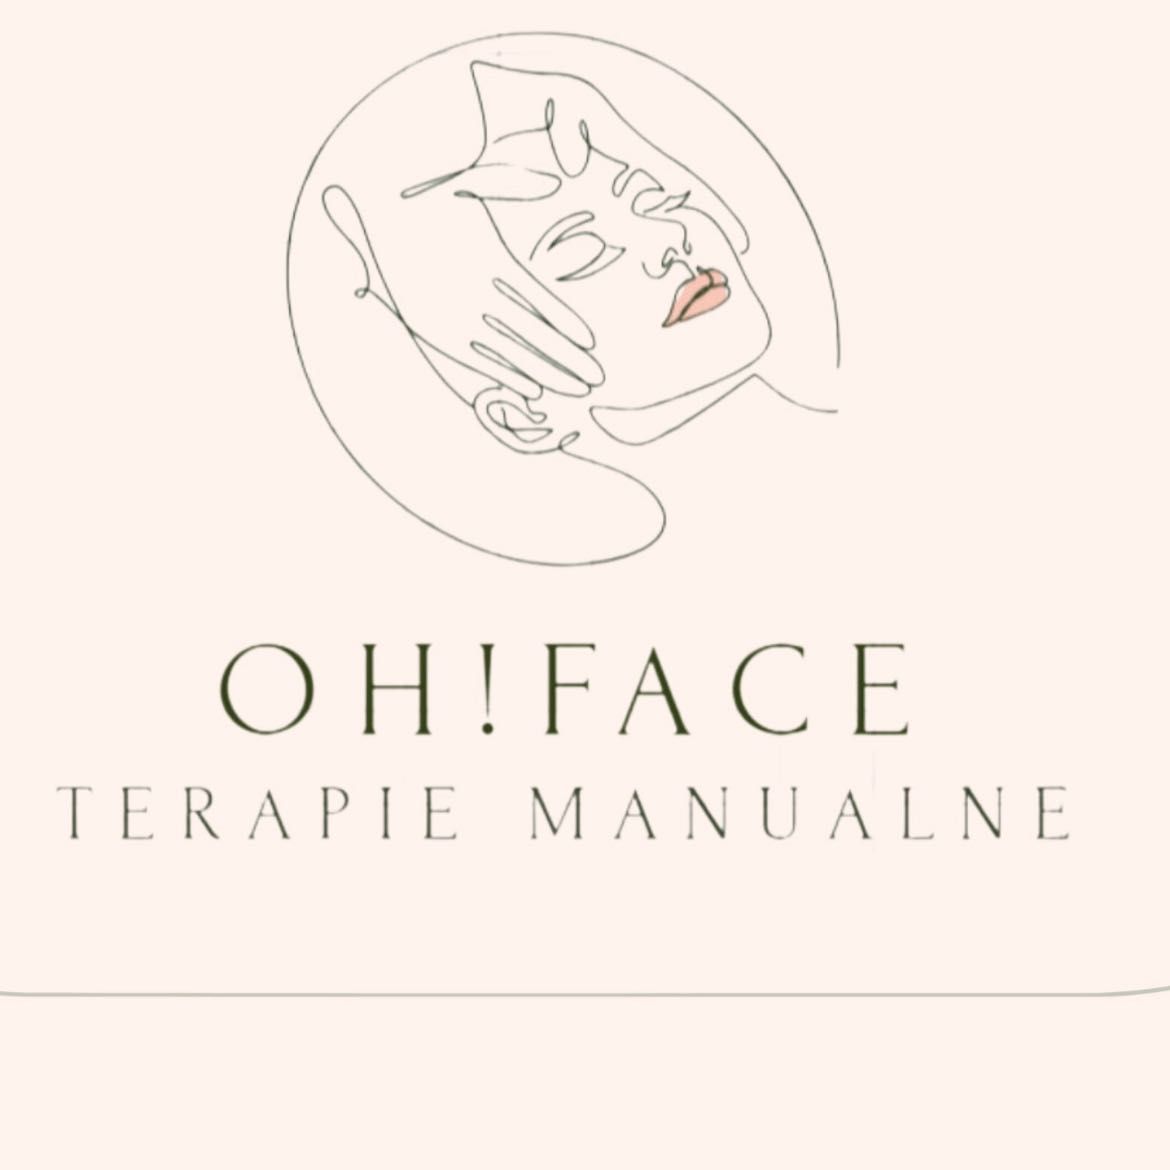 Oh!Face Terapie manualne twarzy, CZESŁAWA WROCZYŃSKIEGO, 11 lok 1, 21-500, Biała Podlaska